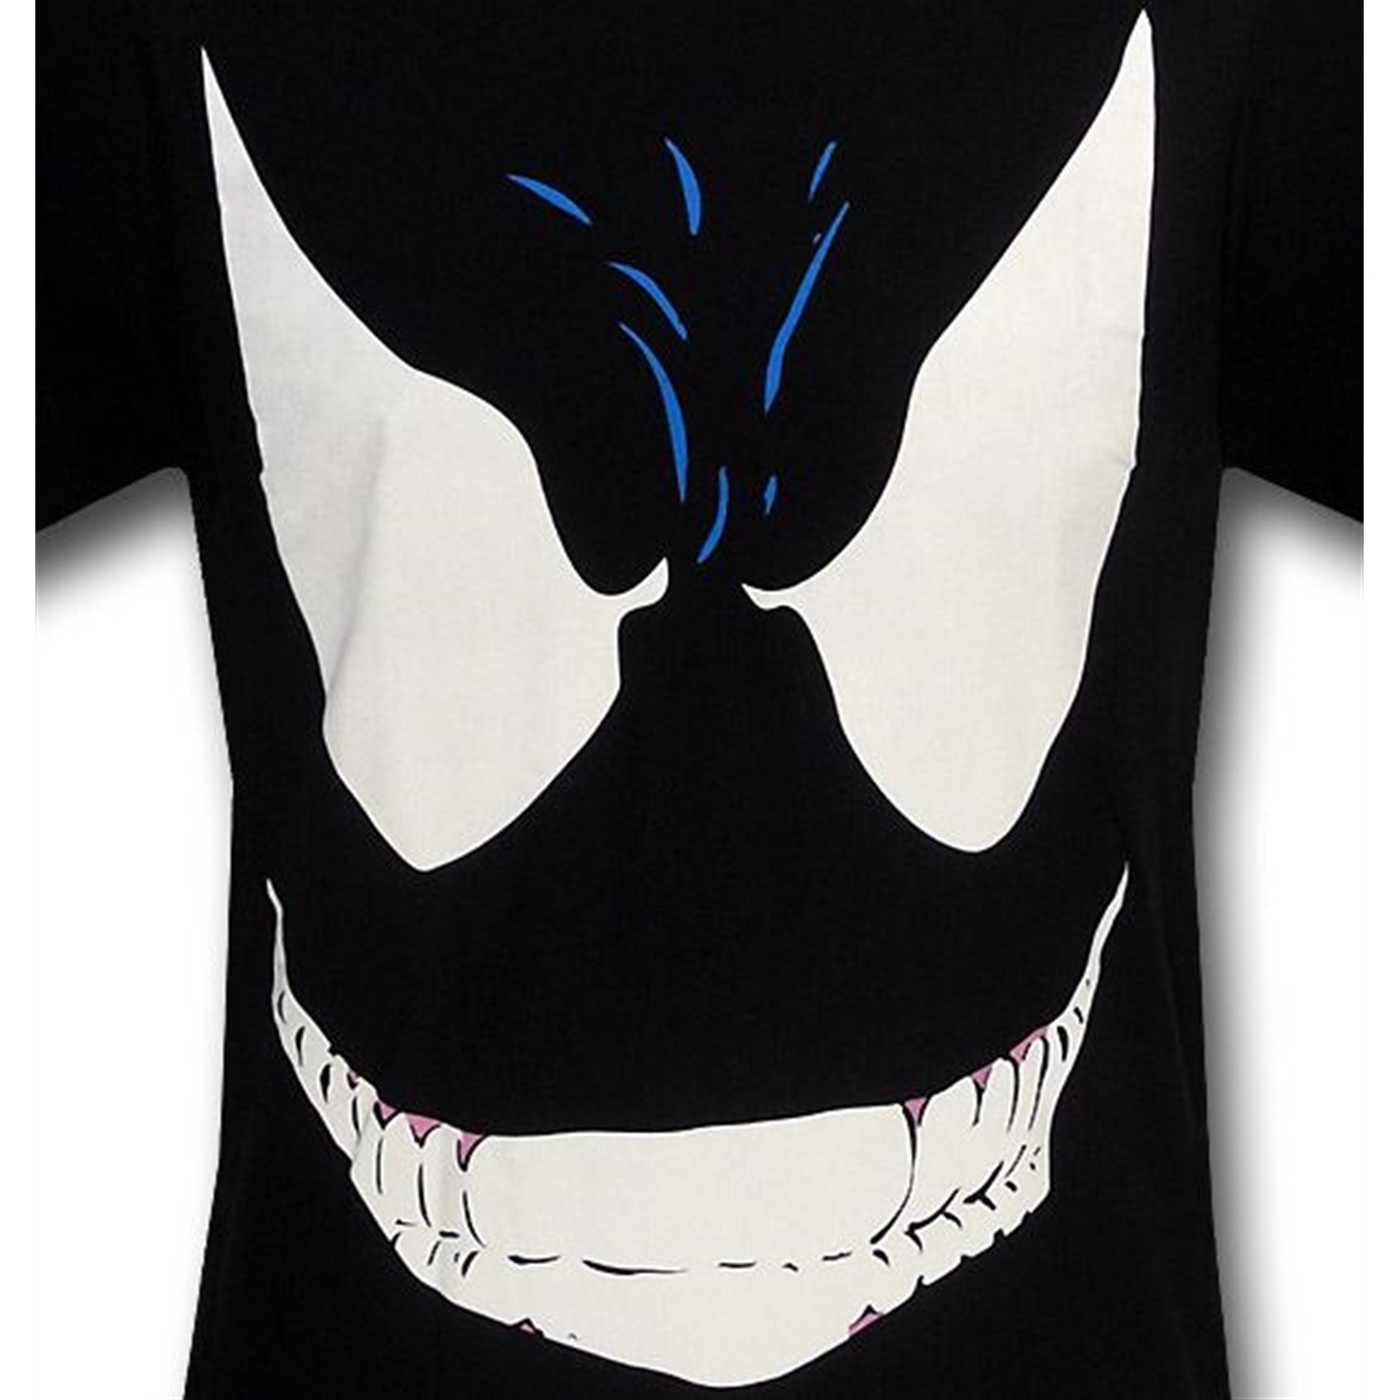 Venom by Todd McFarlane 30 Single T-Shirt